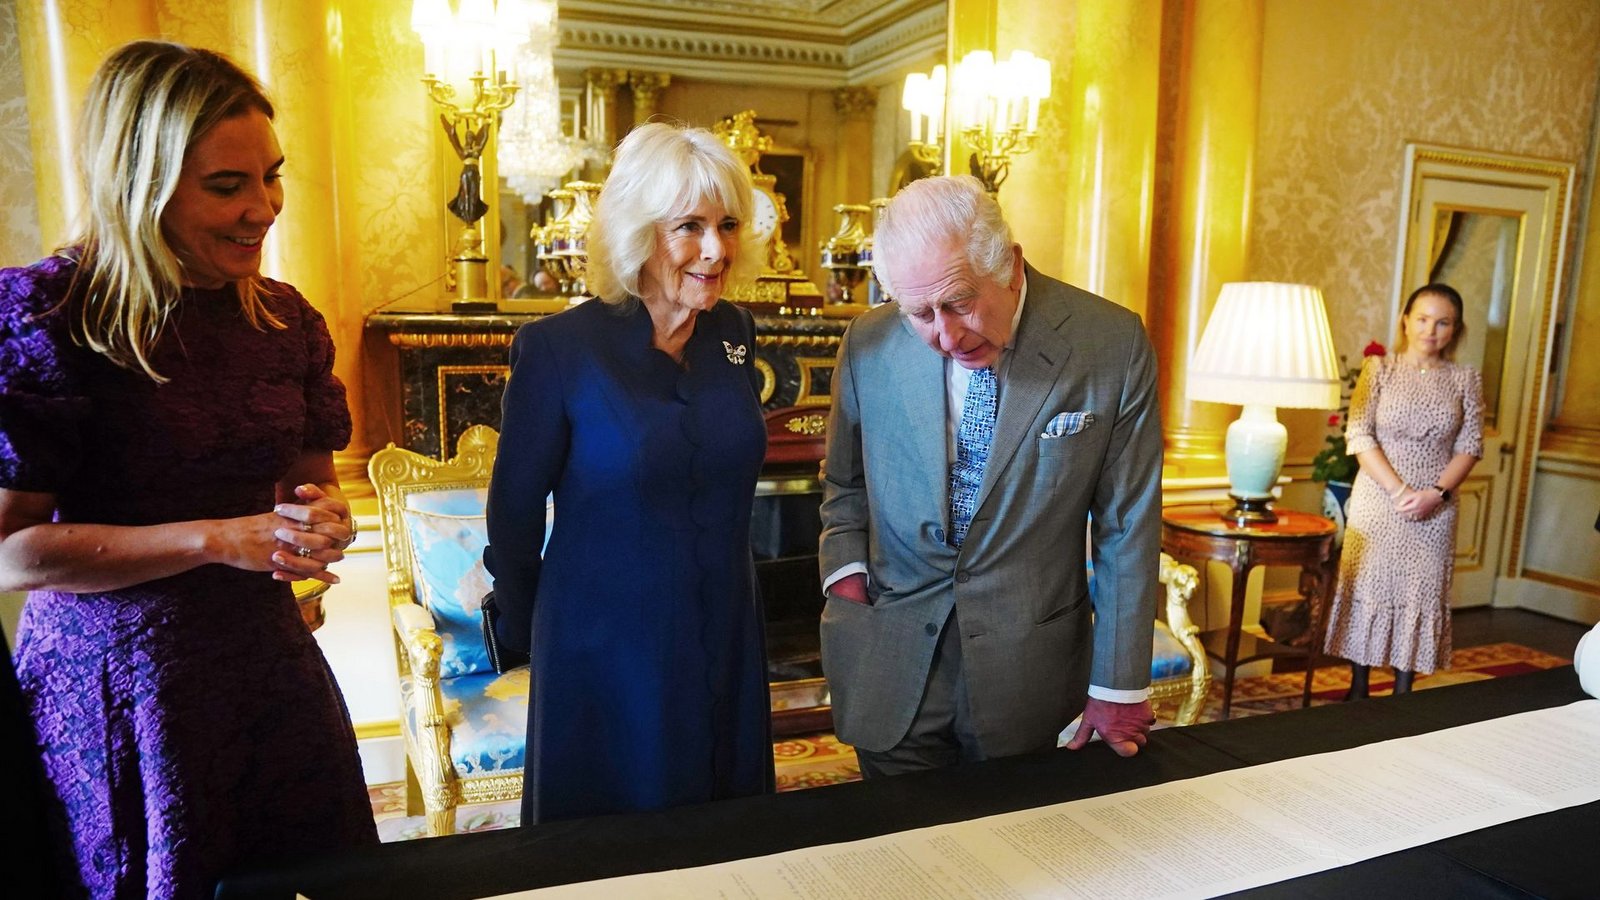 21 Meter lang und rund 11.600 handgeschriebene Wörter: Fast genau ein Jahr nach ihrer Krönung haben König Charles III. und seine Frau Königin Camilla das offizielle Protokoll der Zeremonie erhalten.Foto: Victoria Jones/PA Wire/dpa